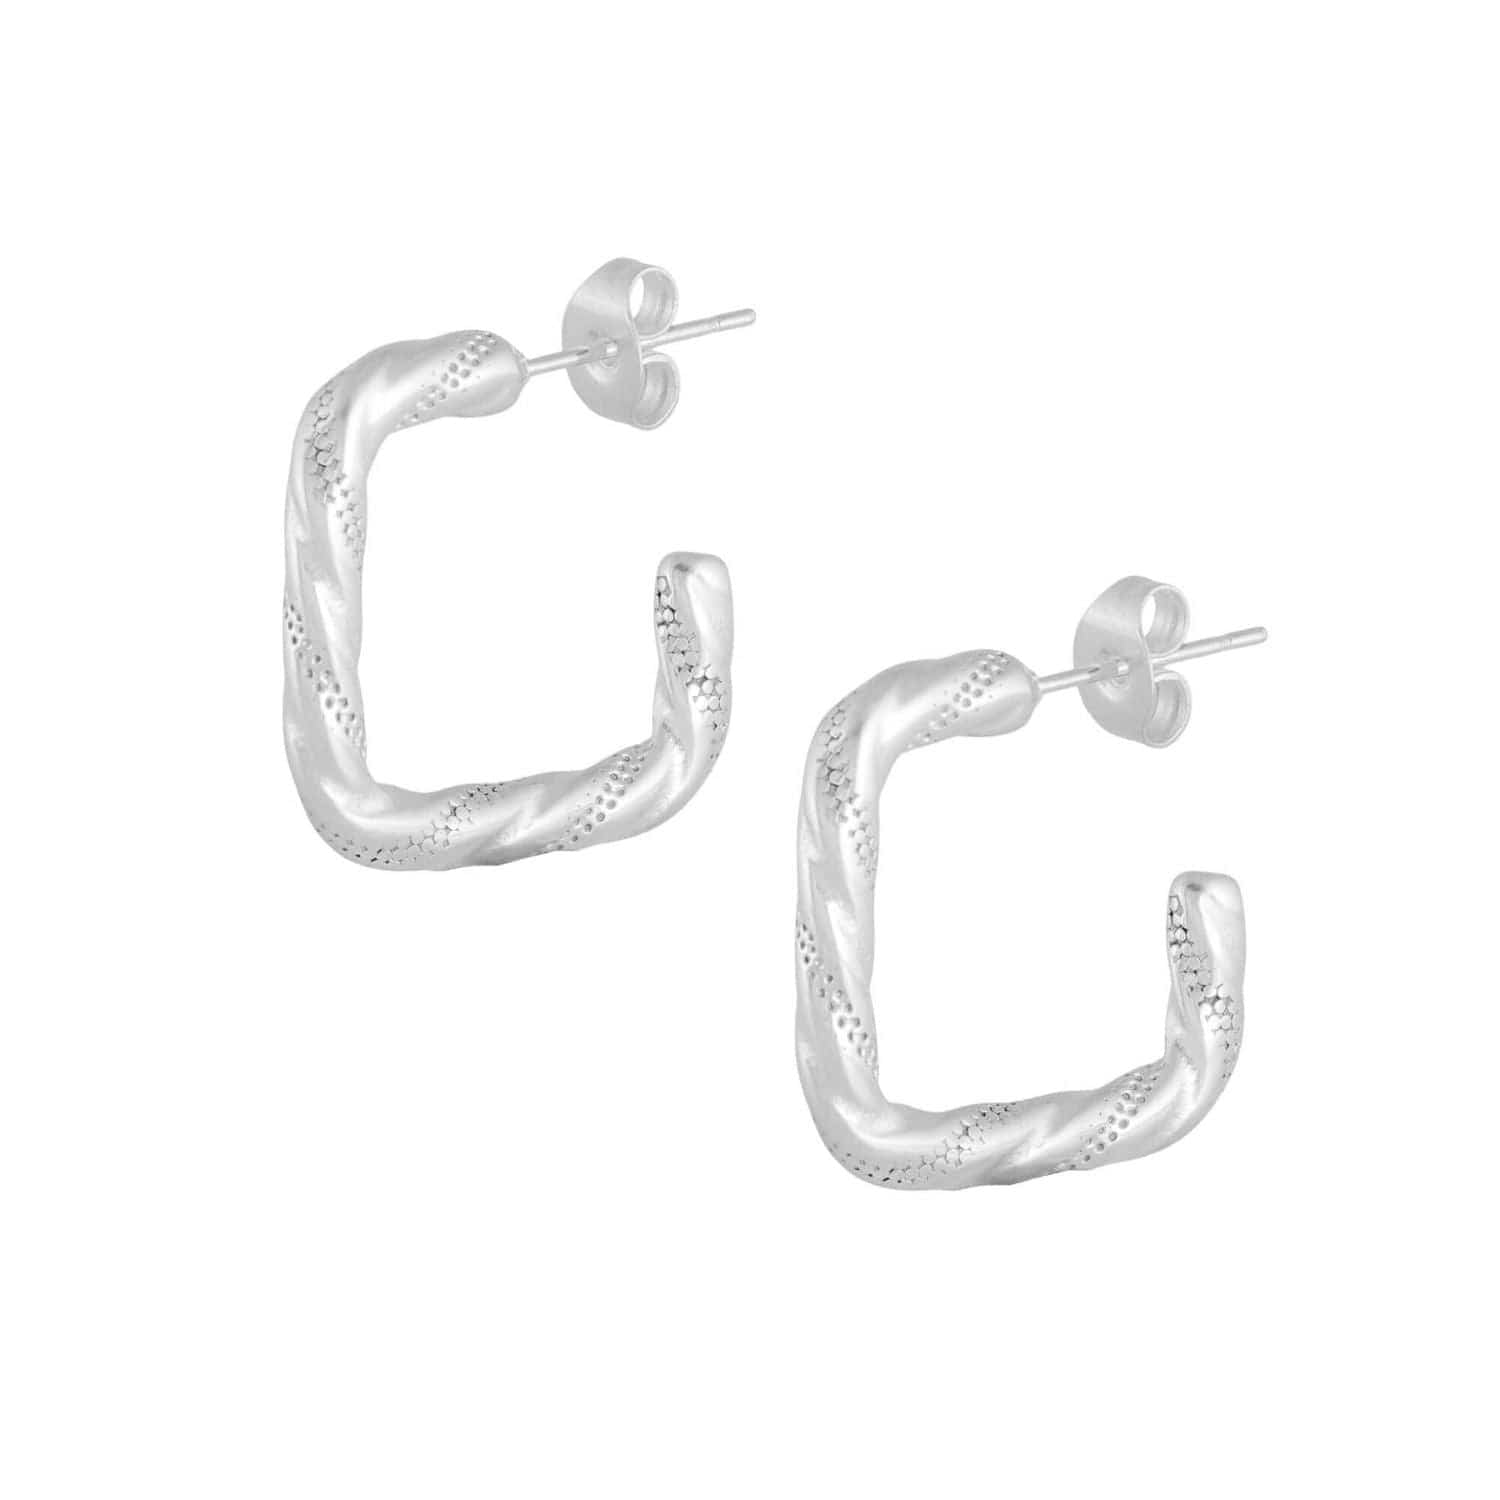 Bohomoon Stainless Steel Nalini Hoop Earrings